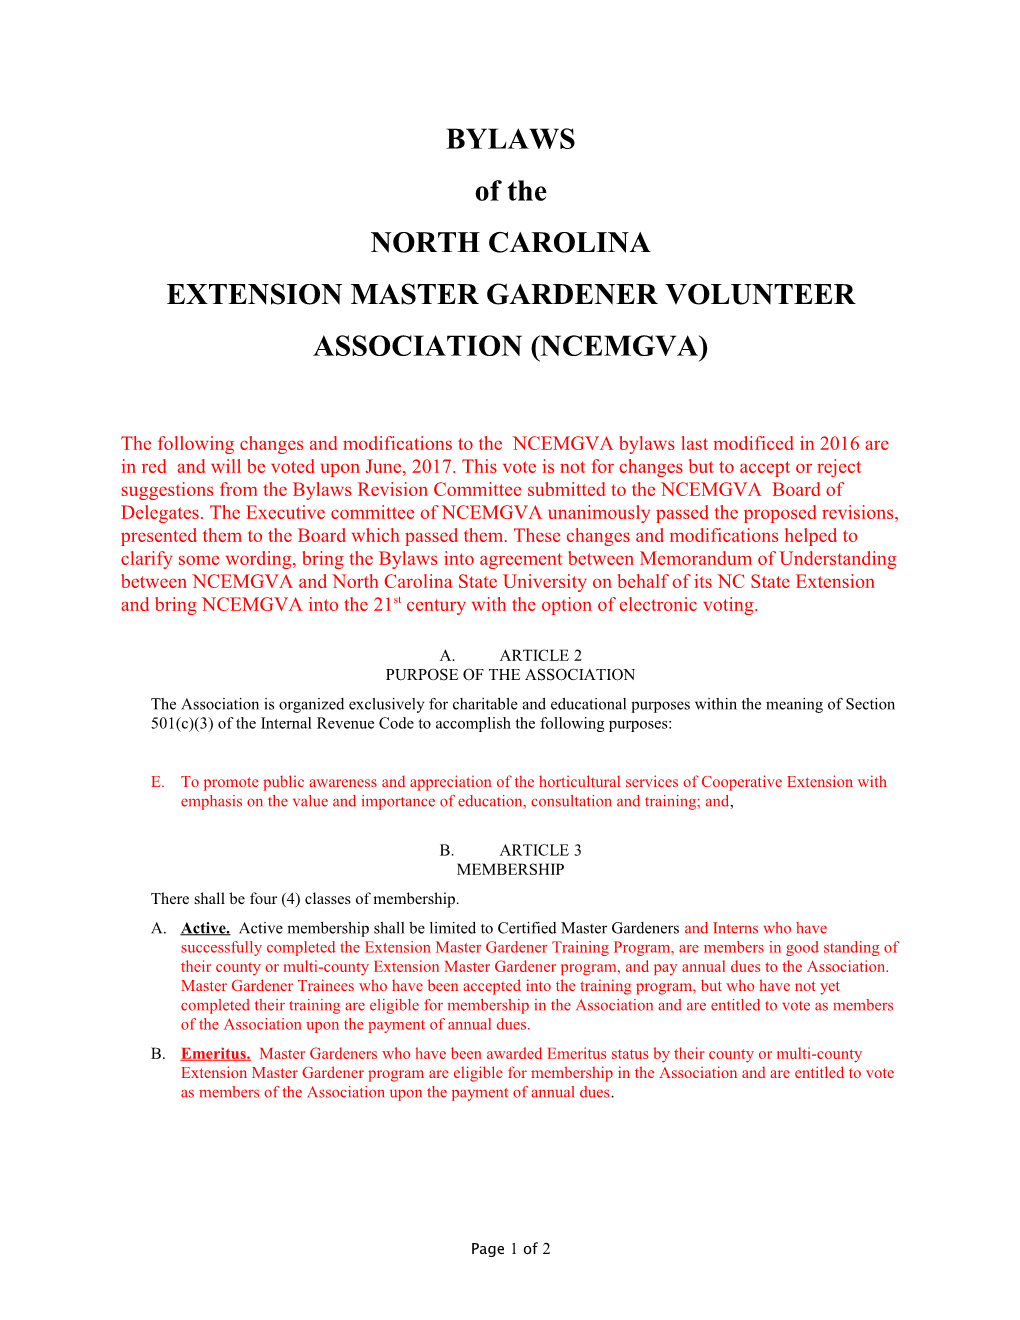 Bylaws of the North Carolina Extension Master Gardener Volunteer Association